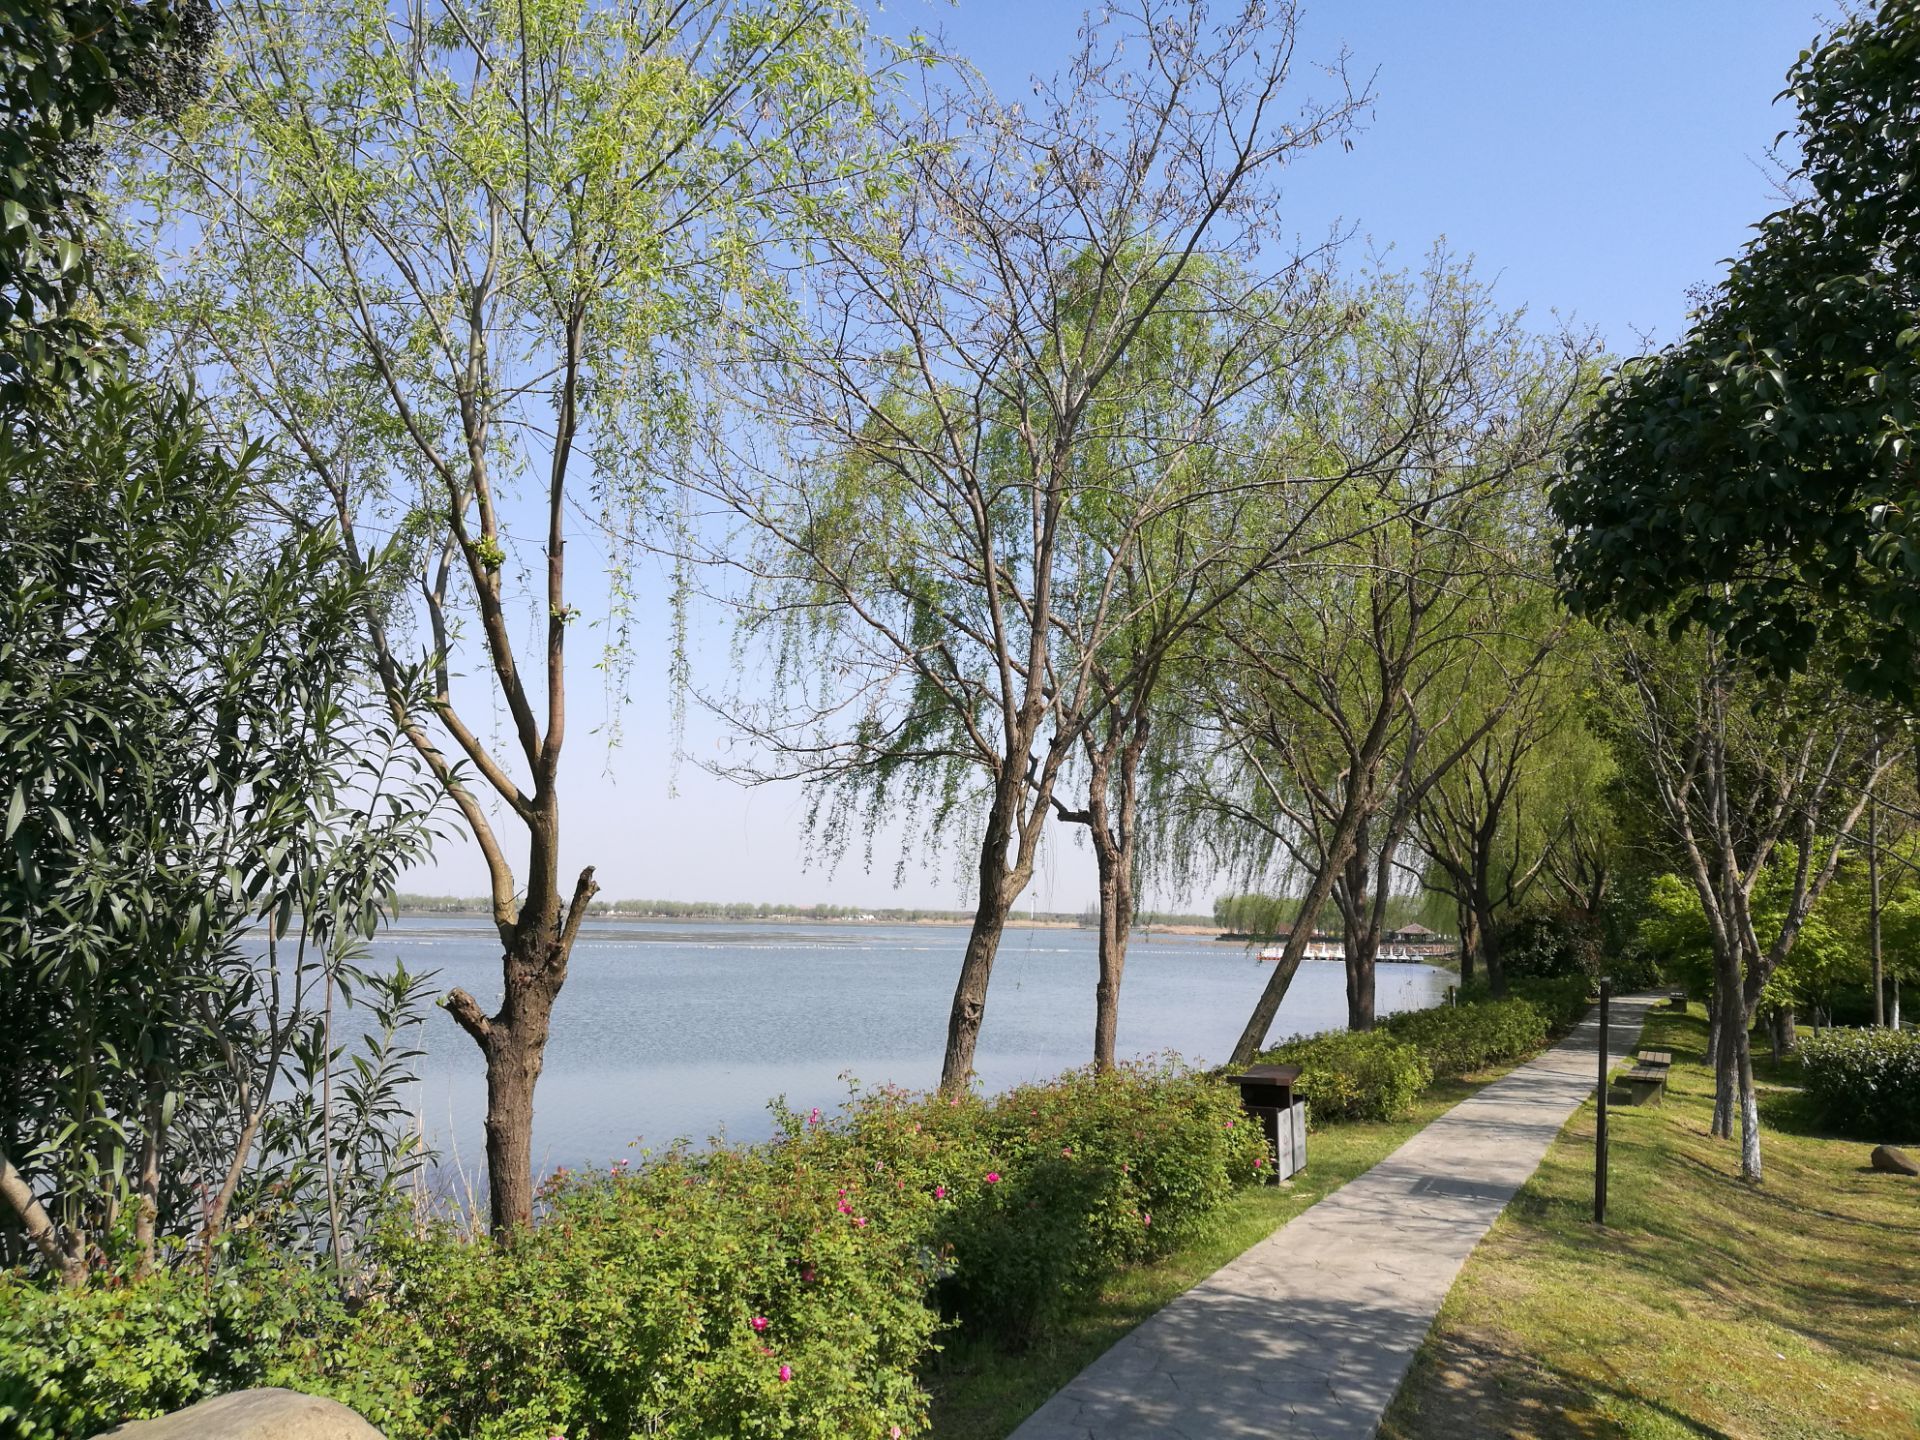 【携程攻略】上海青西郊野公园景点,这家青西郊野公园，位于上海市青浦区的西面，距离市中心约60公里，车…